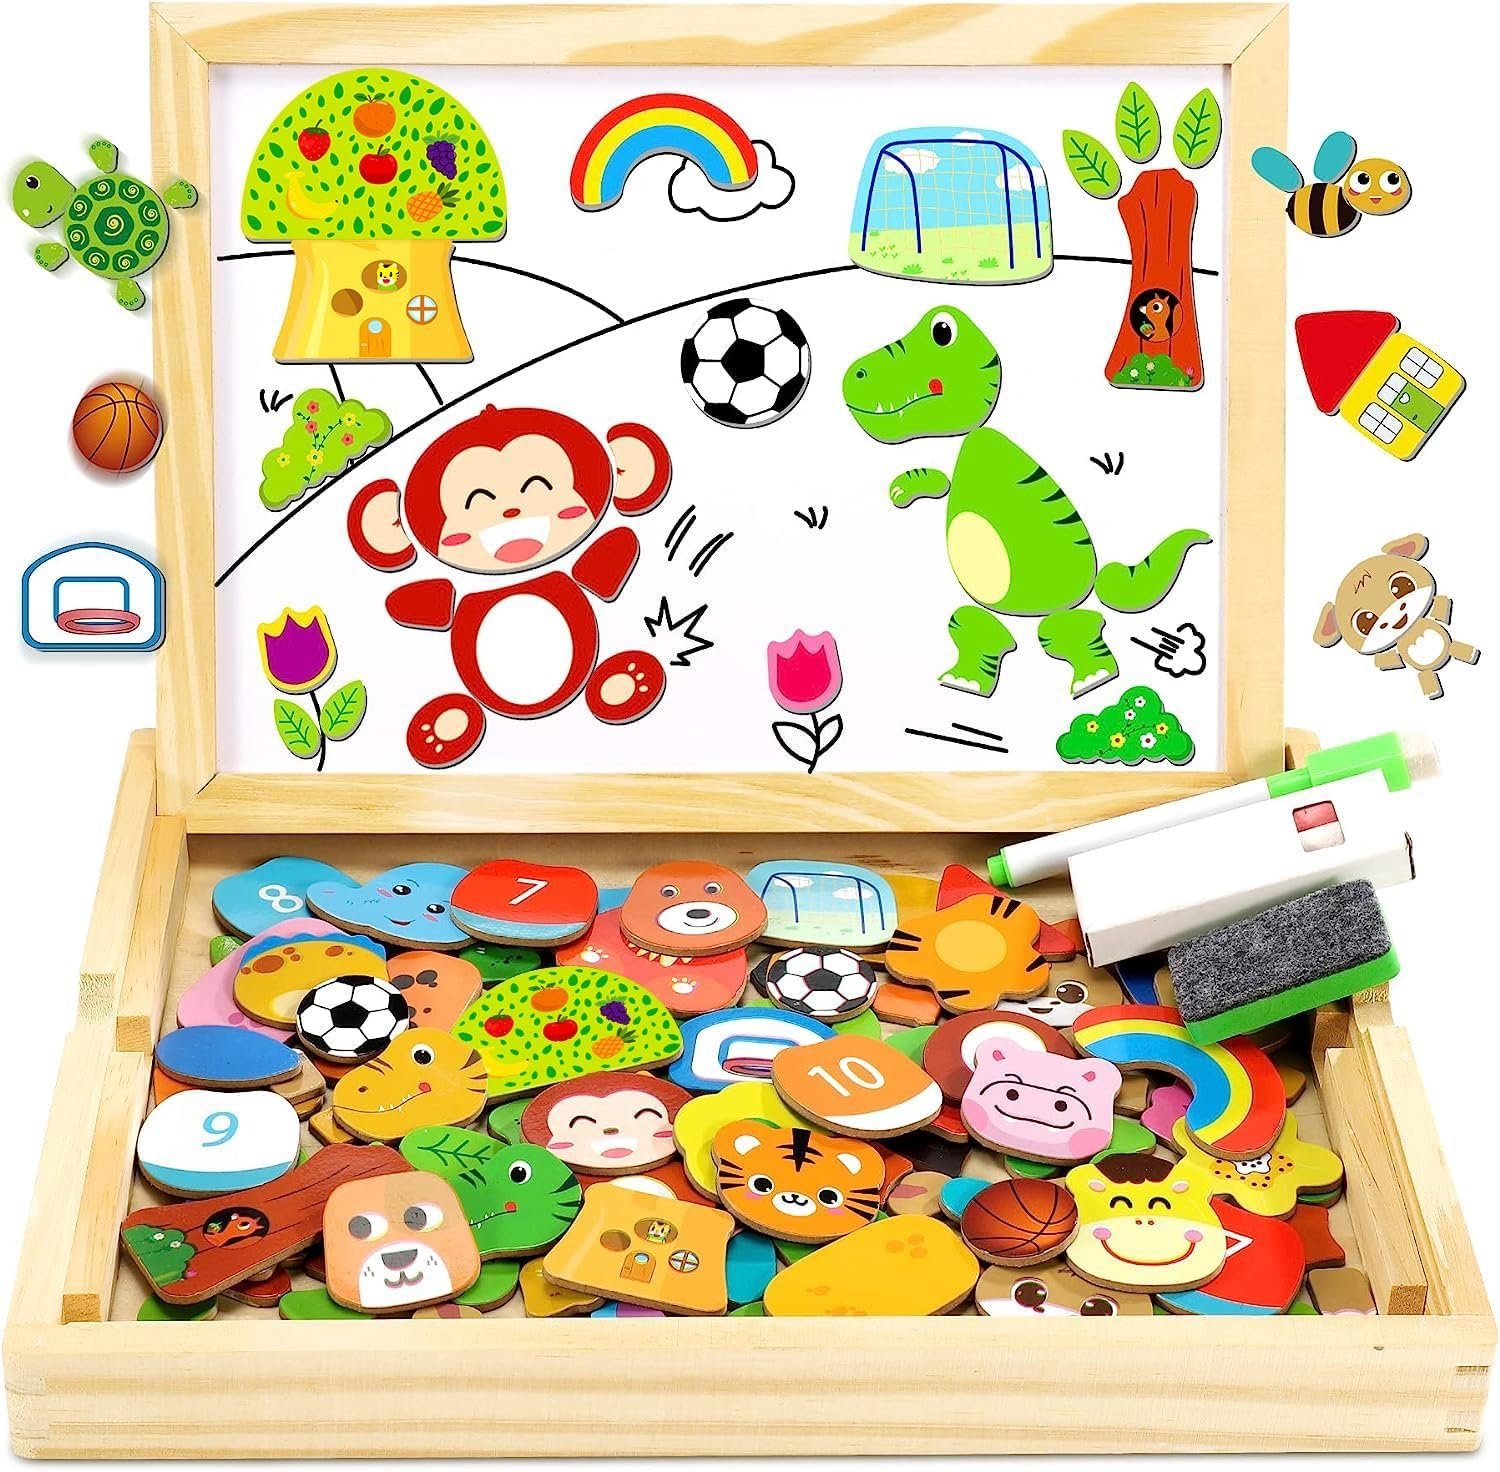 LENBEST Magnetspielbausteine Holzpuzzle mit Doppelplatte, Lernspielzeug für Kinder, (110 Stück magnetisches Holzspielzeug Tier- und Fußballmuster), Magnetplatte Magnet Kinderspielzeug magnetisches Spiel Puzzle